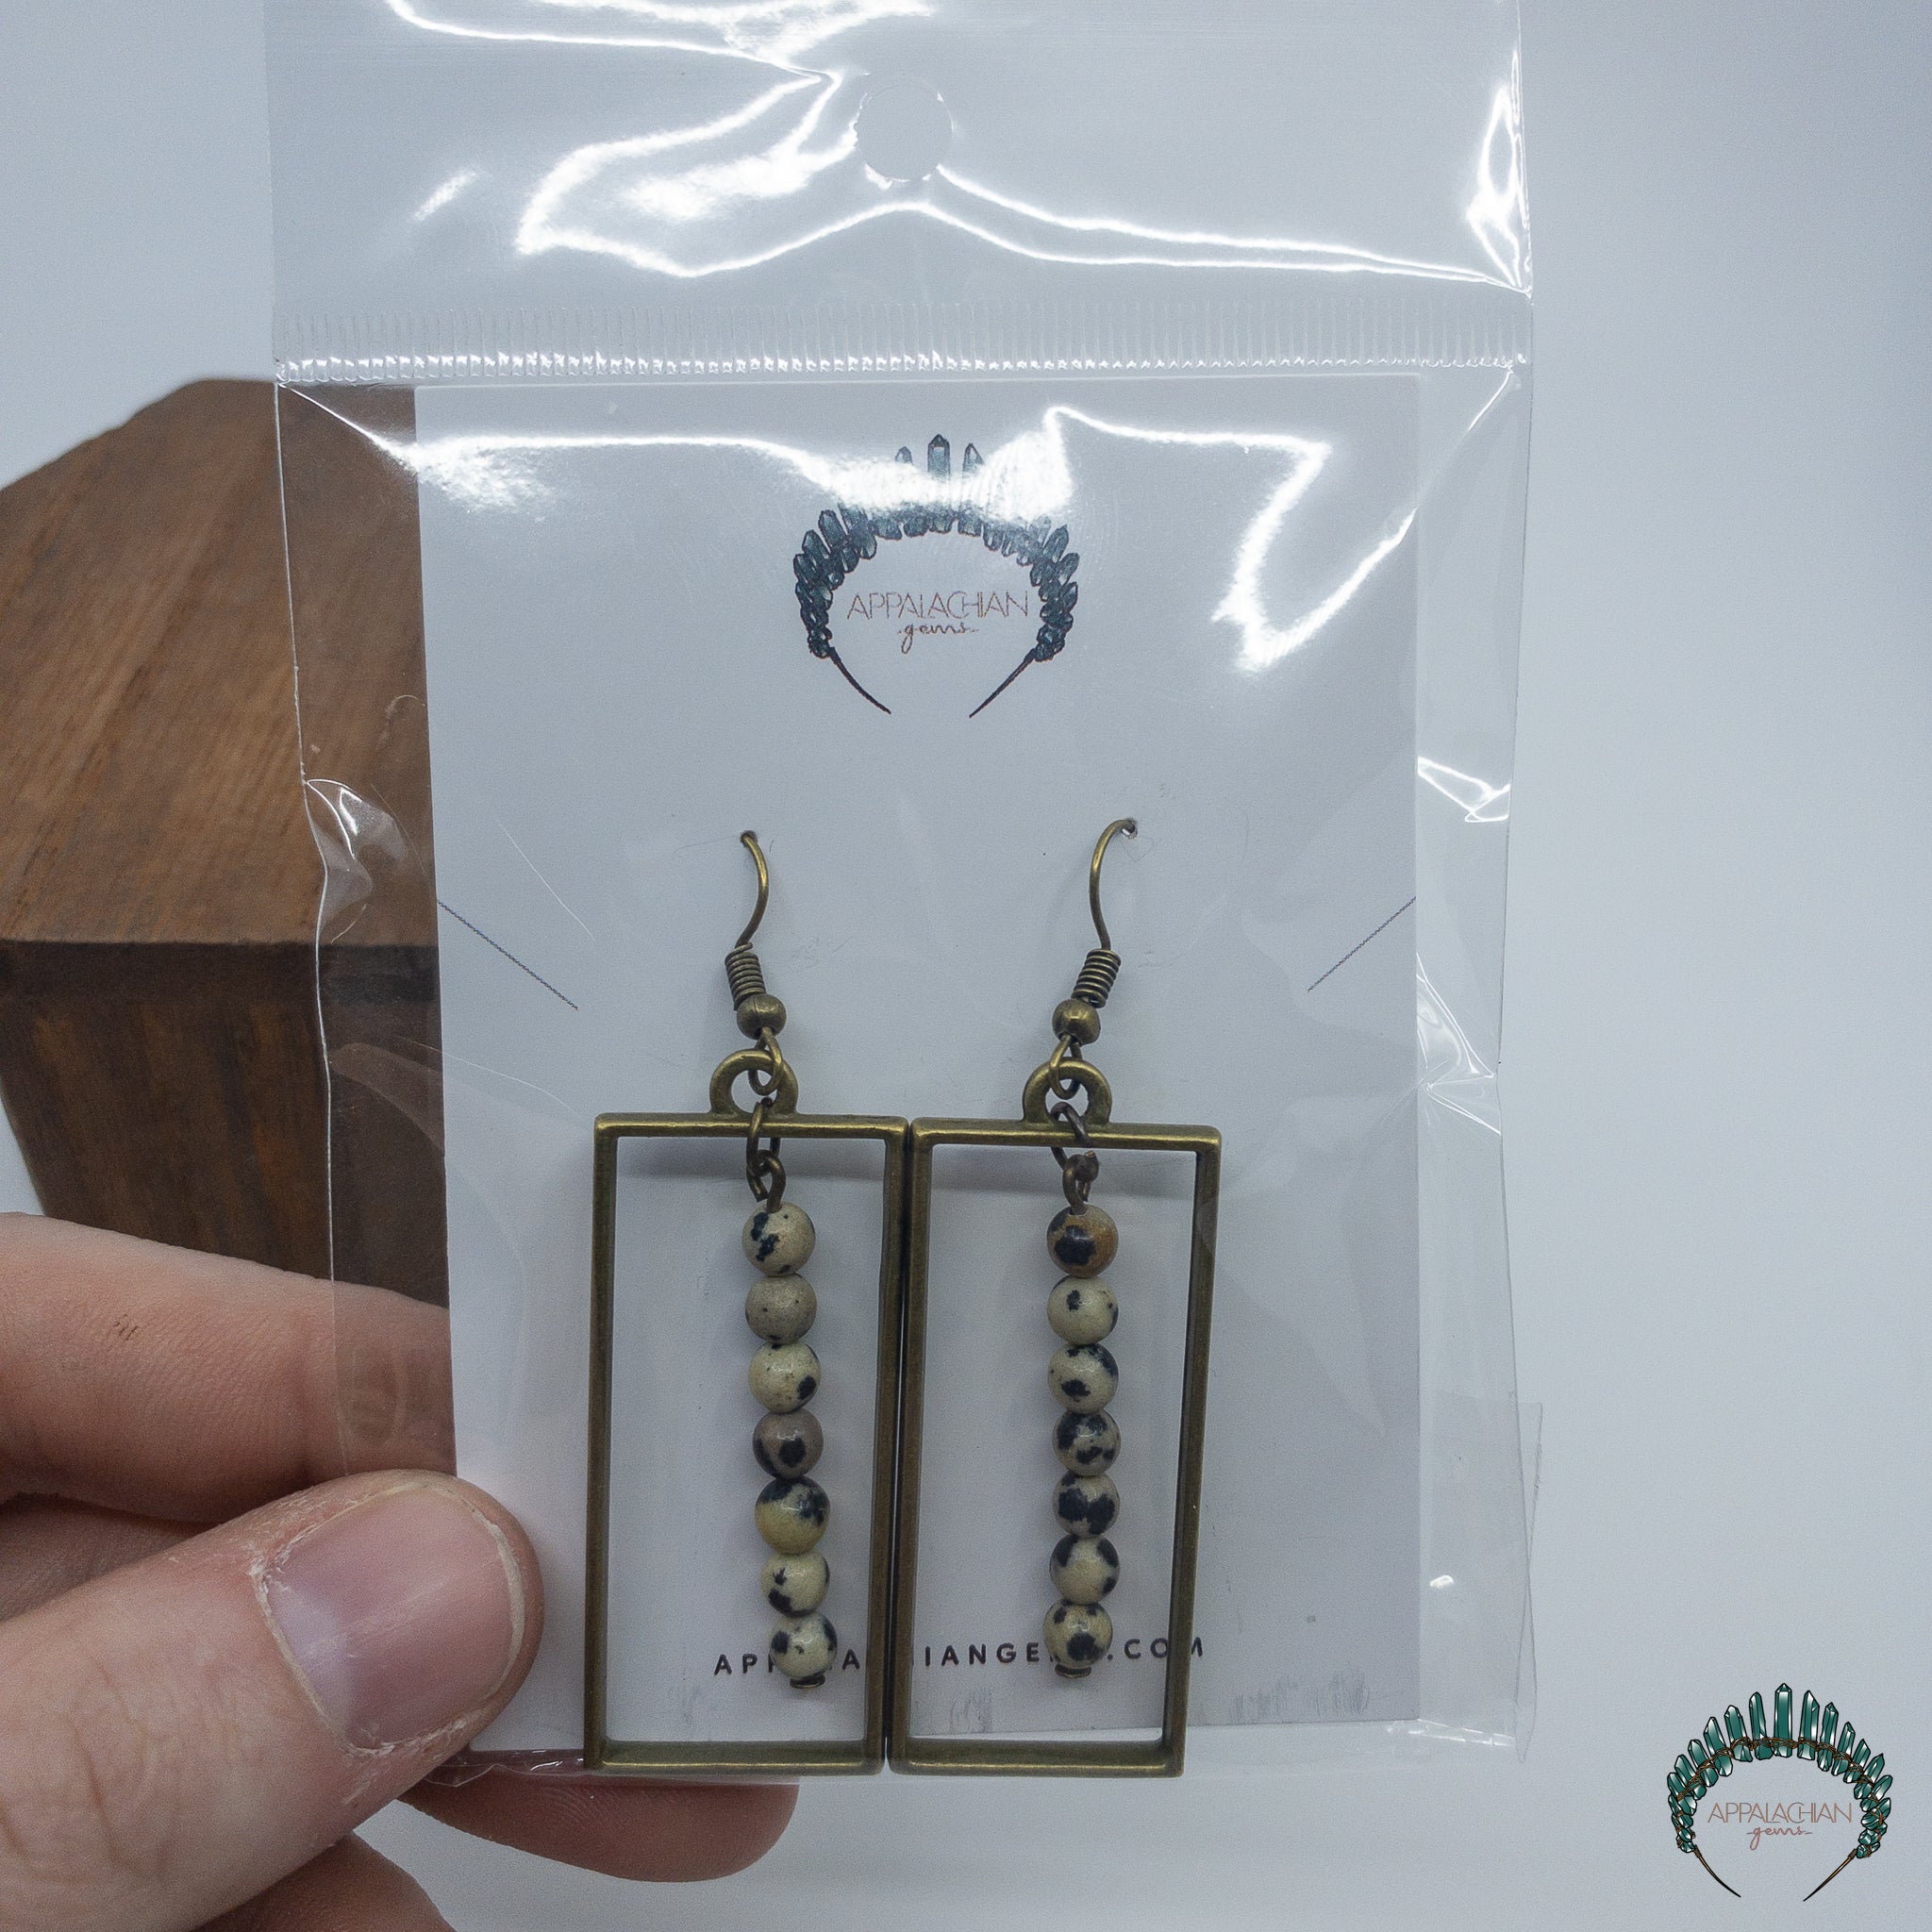 Dalmatian Jasper Bead Earrings - Appalachian Gems